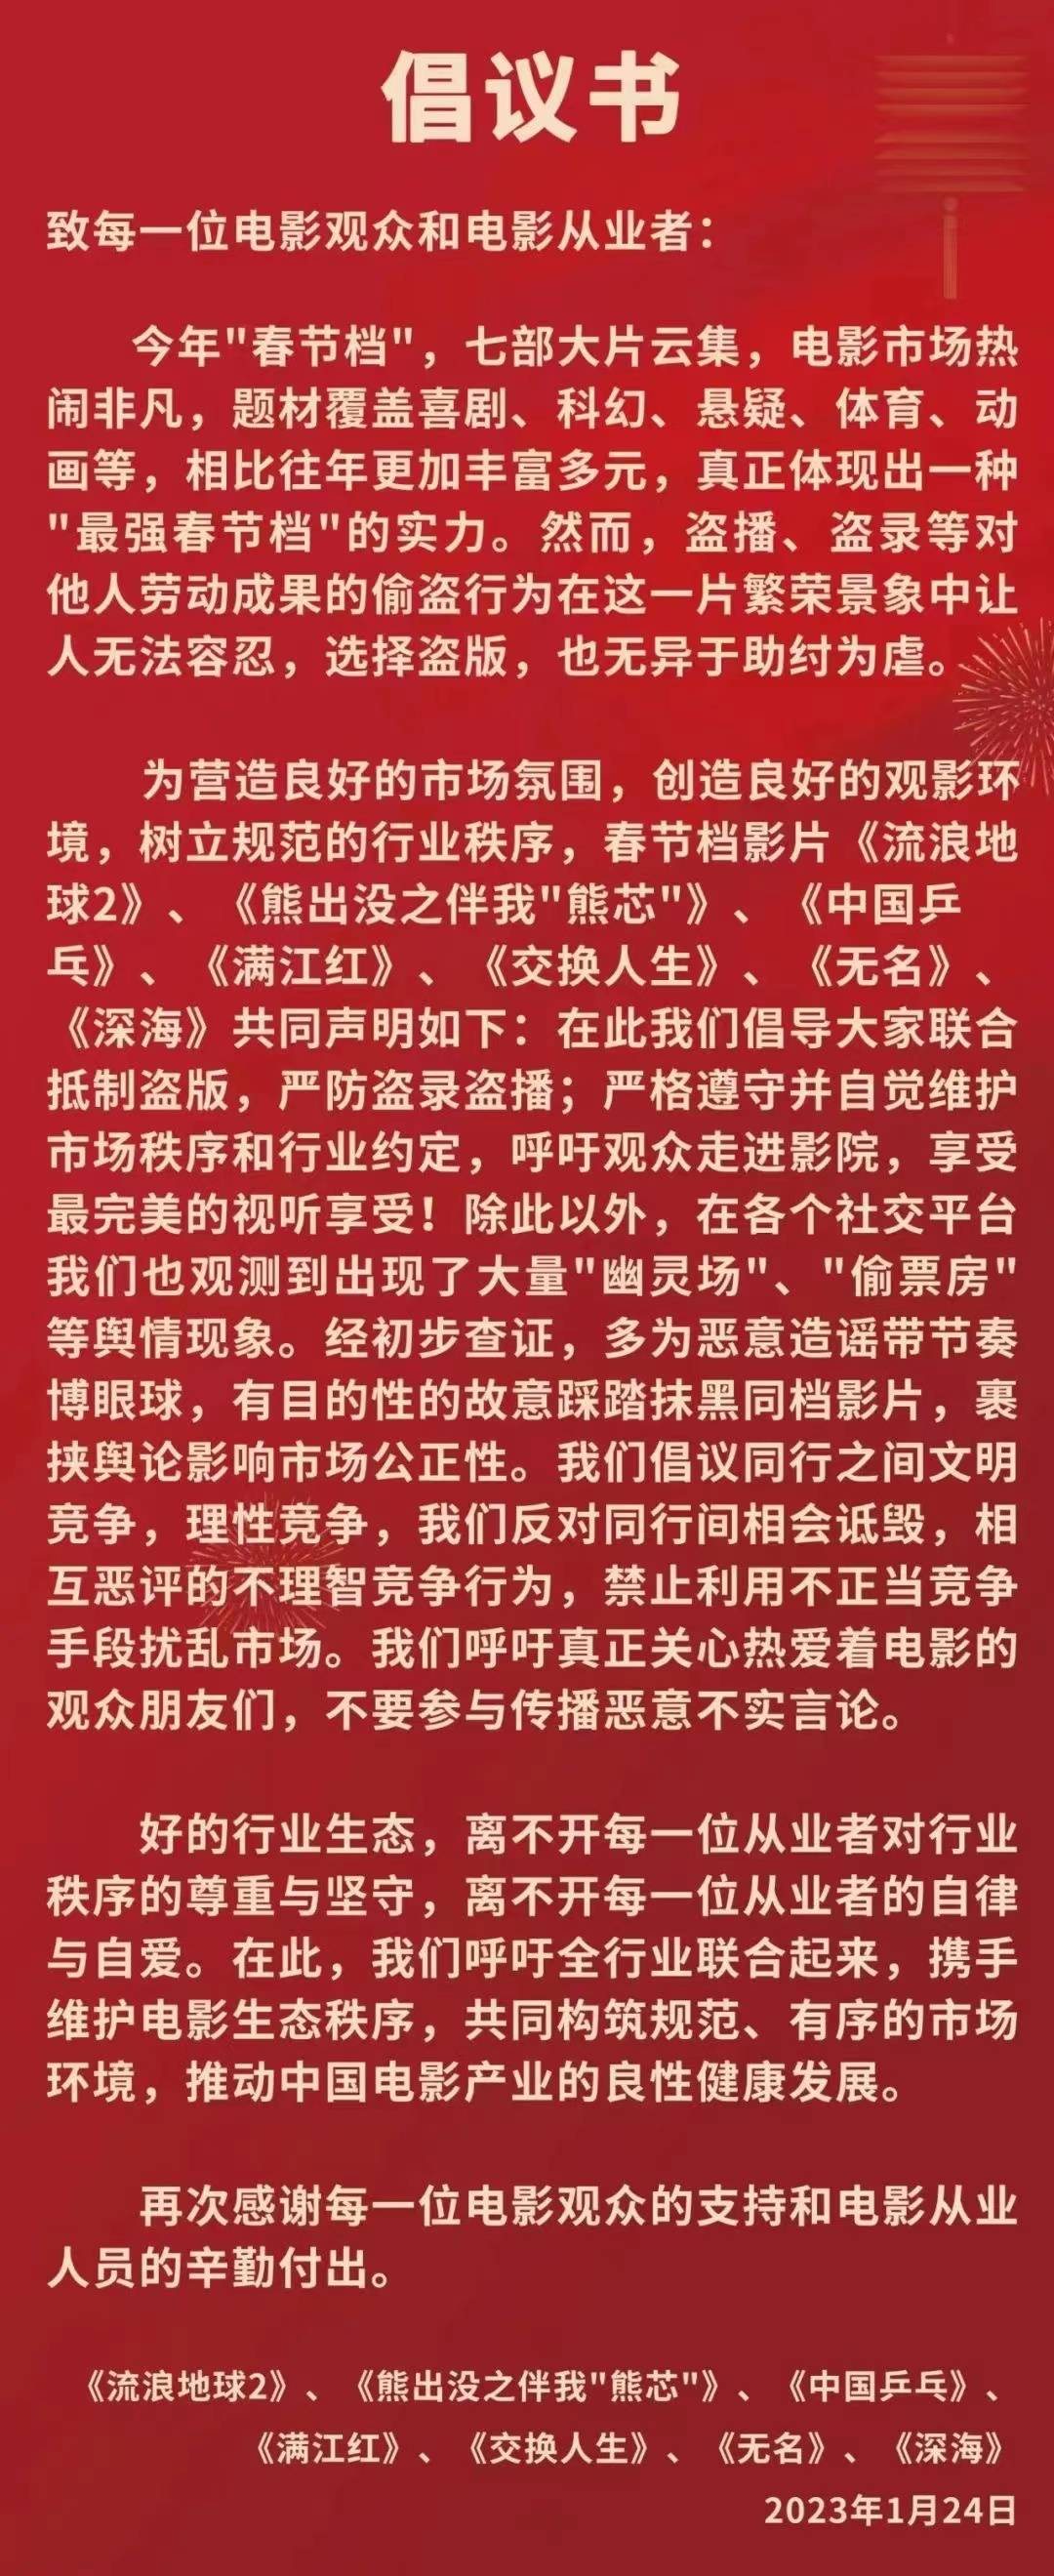 春节档七部新片联合呼吁“拒绝盗版、抵制摄屏”